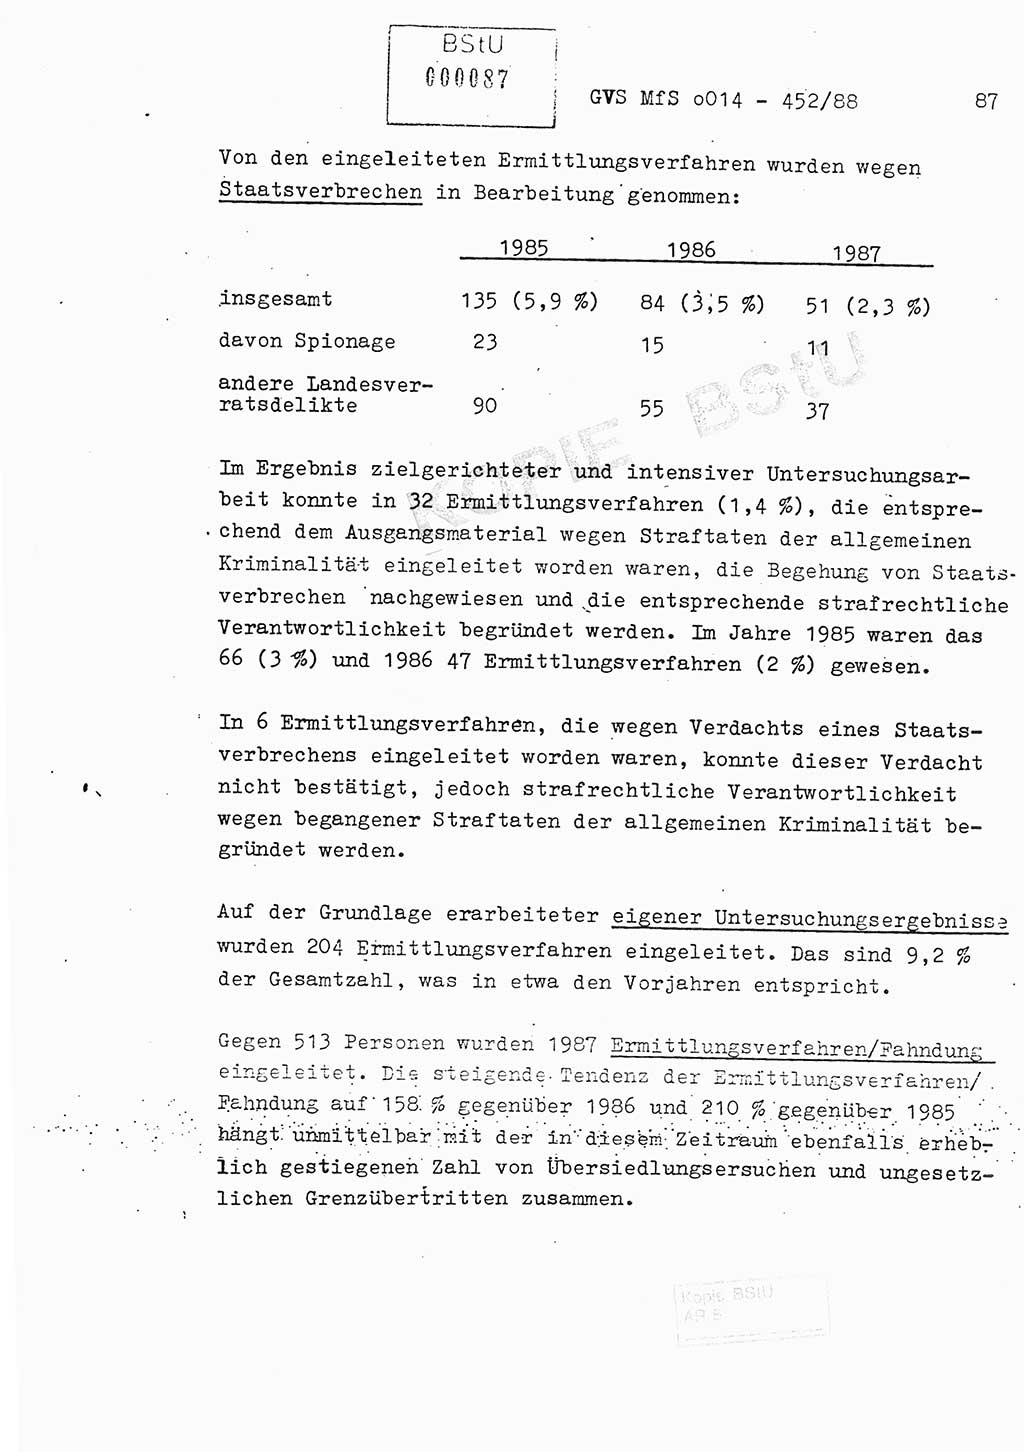 Jahresbericht der Hauptabteilung (HA) Ⅸ 1987, Einschätzung der Wirksamkeit der Untersuchungsarbeit im Jahre 1987, Ministerium für Staatssicherheit (MfS) der Deutschen Demokratischen Republik (DDR), Hauptabteilung Ⅸ, Geheime Verschlußsache (GVS) o014-452/88, Berlin 1988, Seite 87 (Einsch. MfS DDR HA Ⅸ GVS o014-452/88 1987, S. 87)